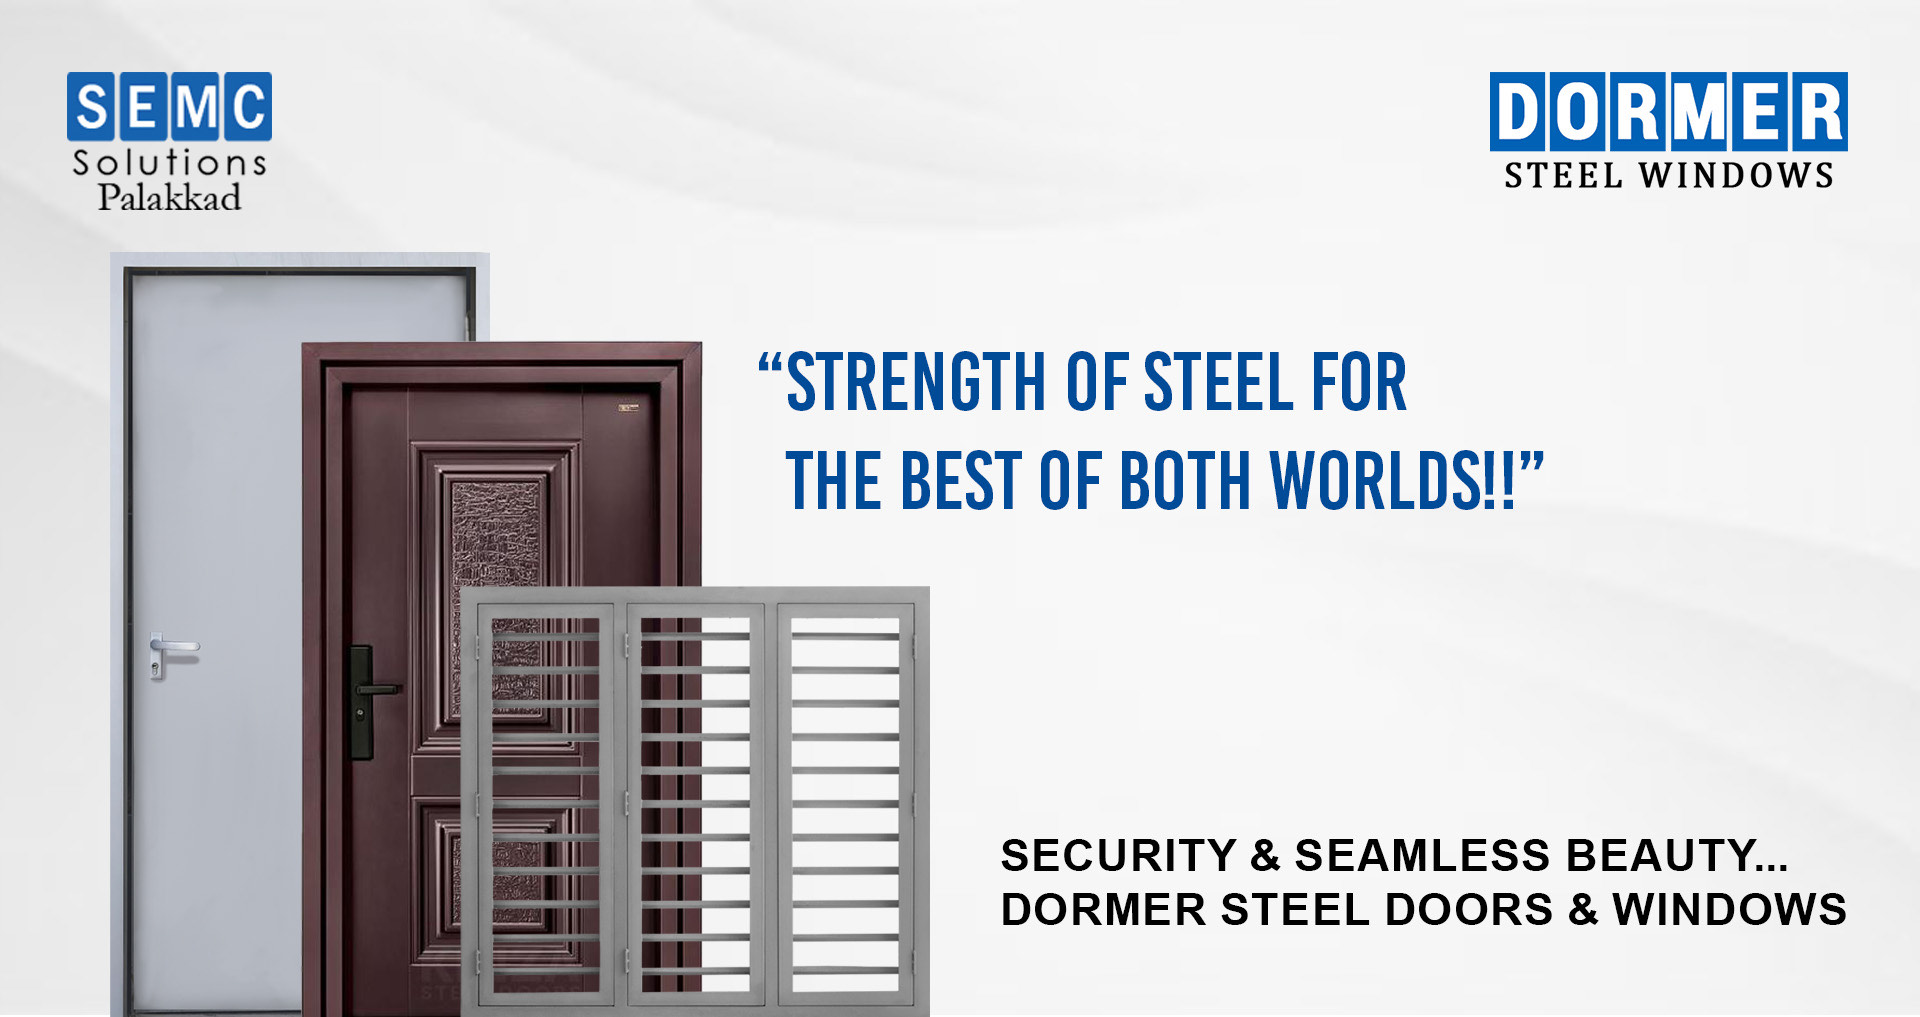 Dormer Steel Doors and Windows